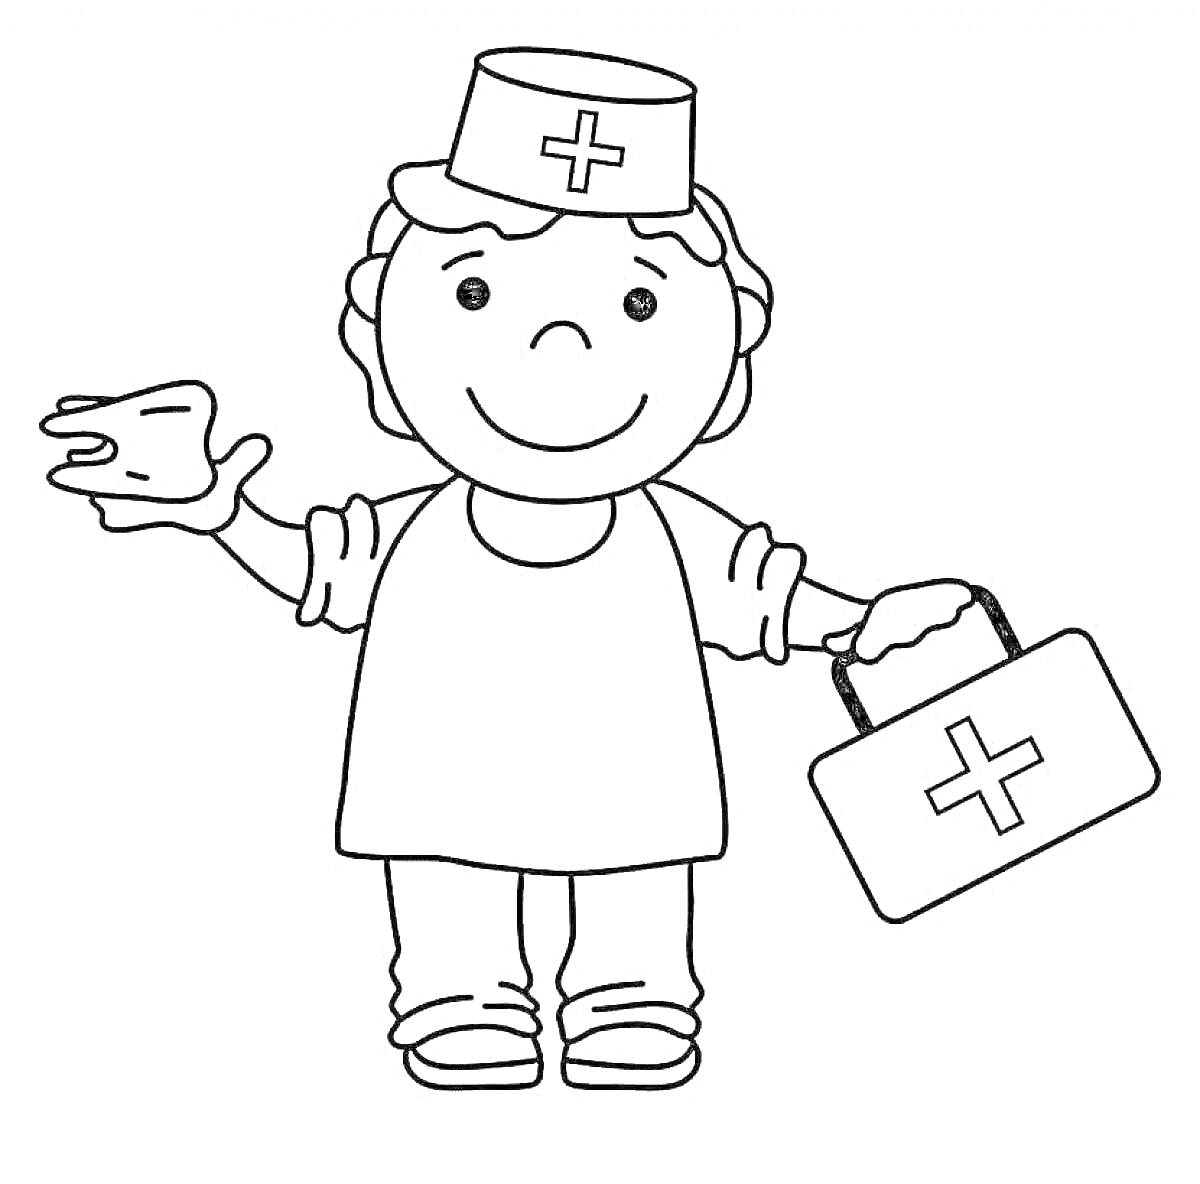 Растянувший руку доктор с медицинской сумкой и шапочкой с крестом